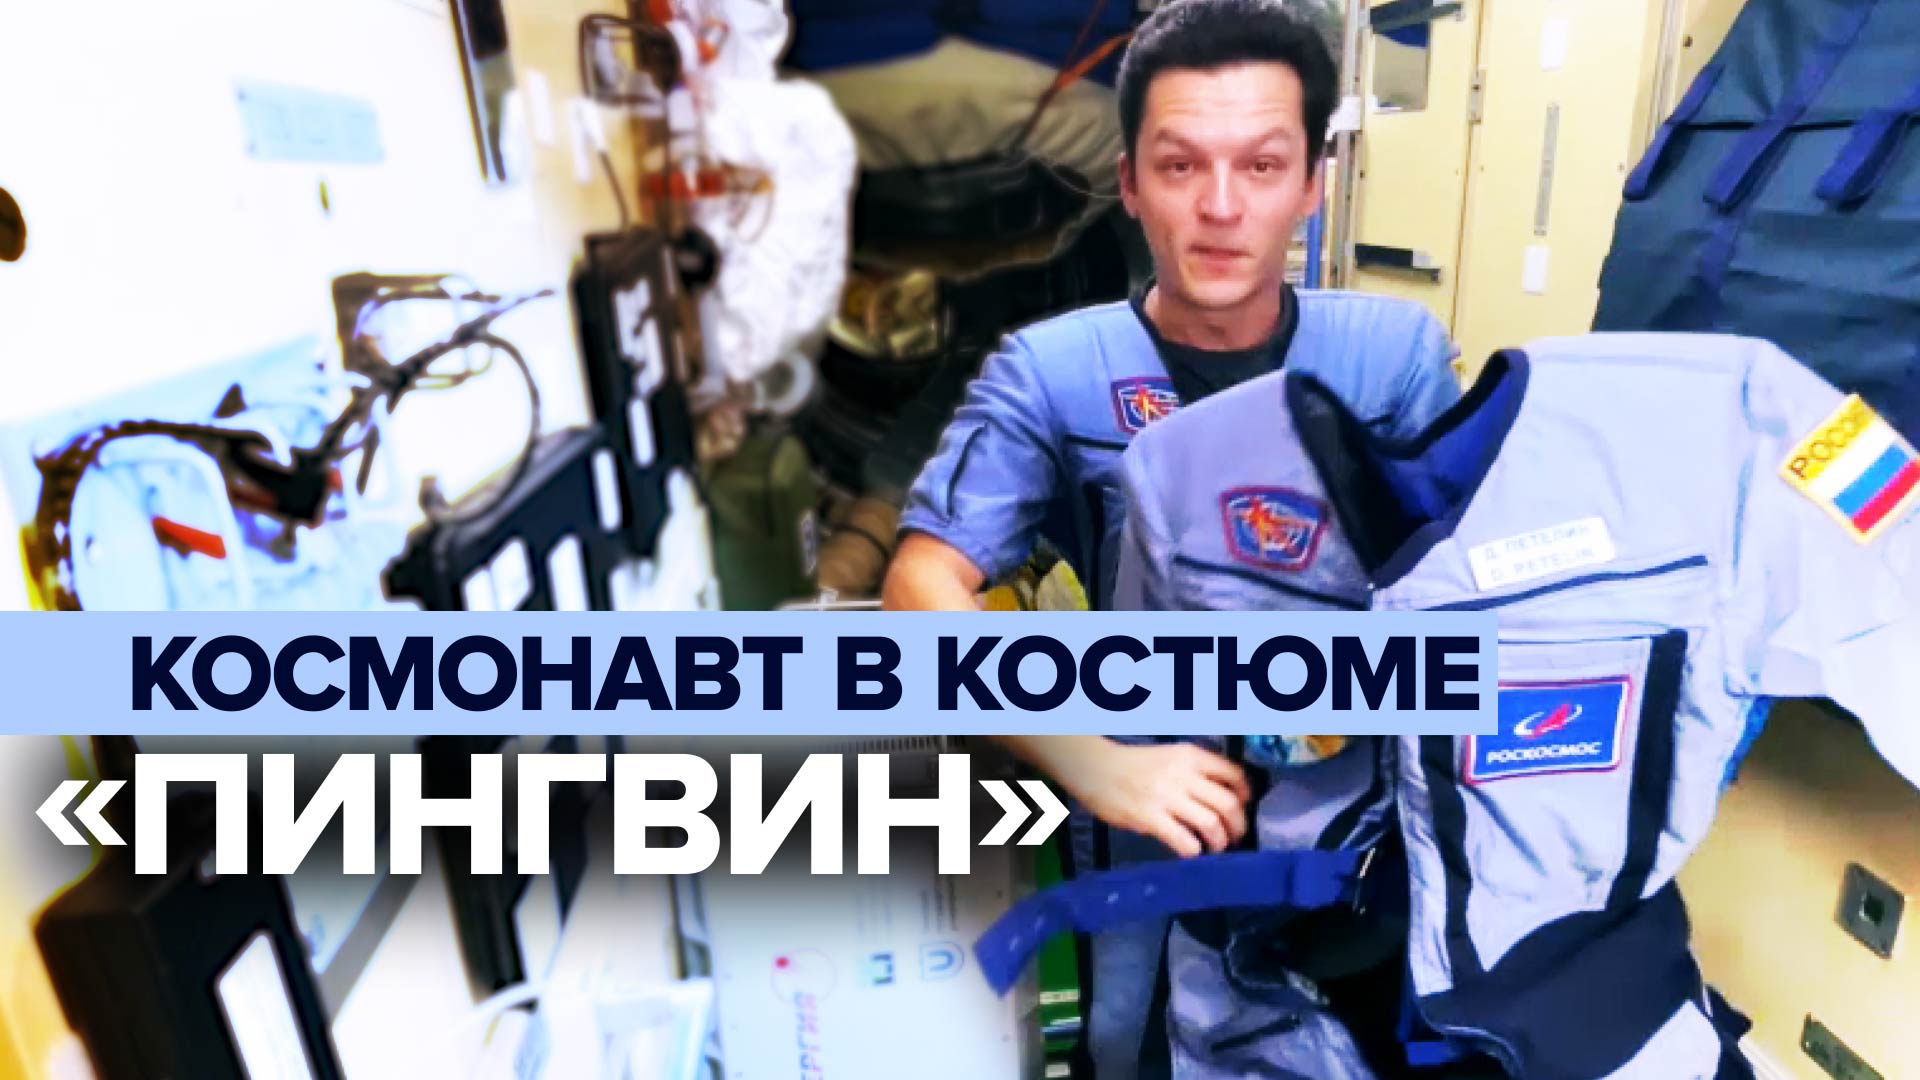 Для здоровья мышц и костей: российский космонавт рассказал о специальном нагрузочном костюме